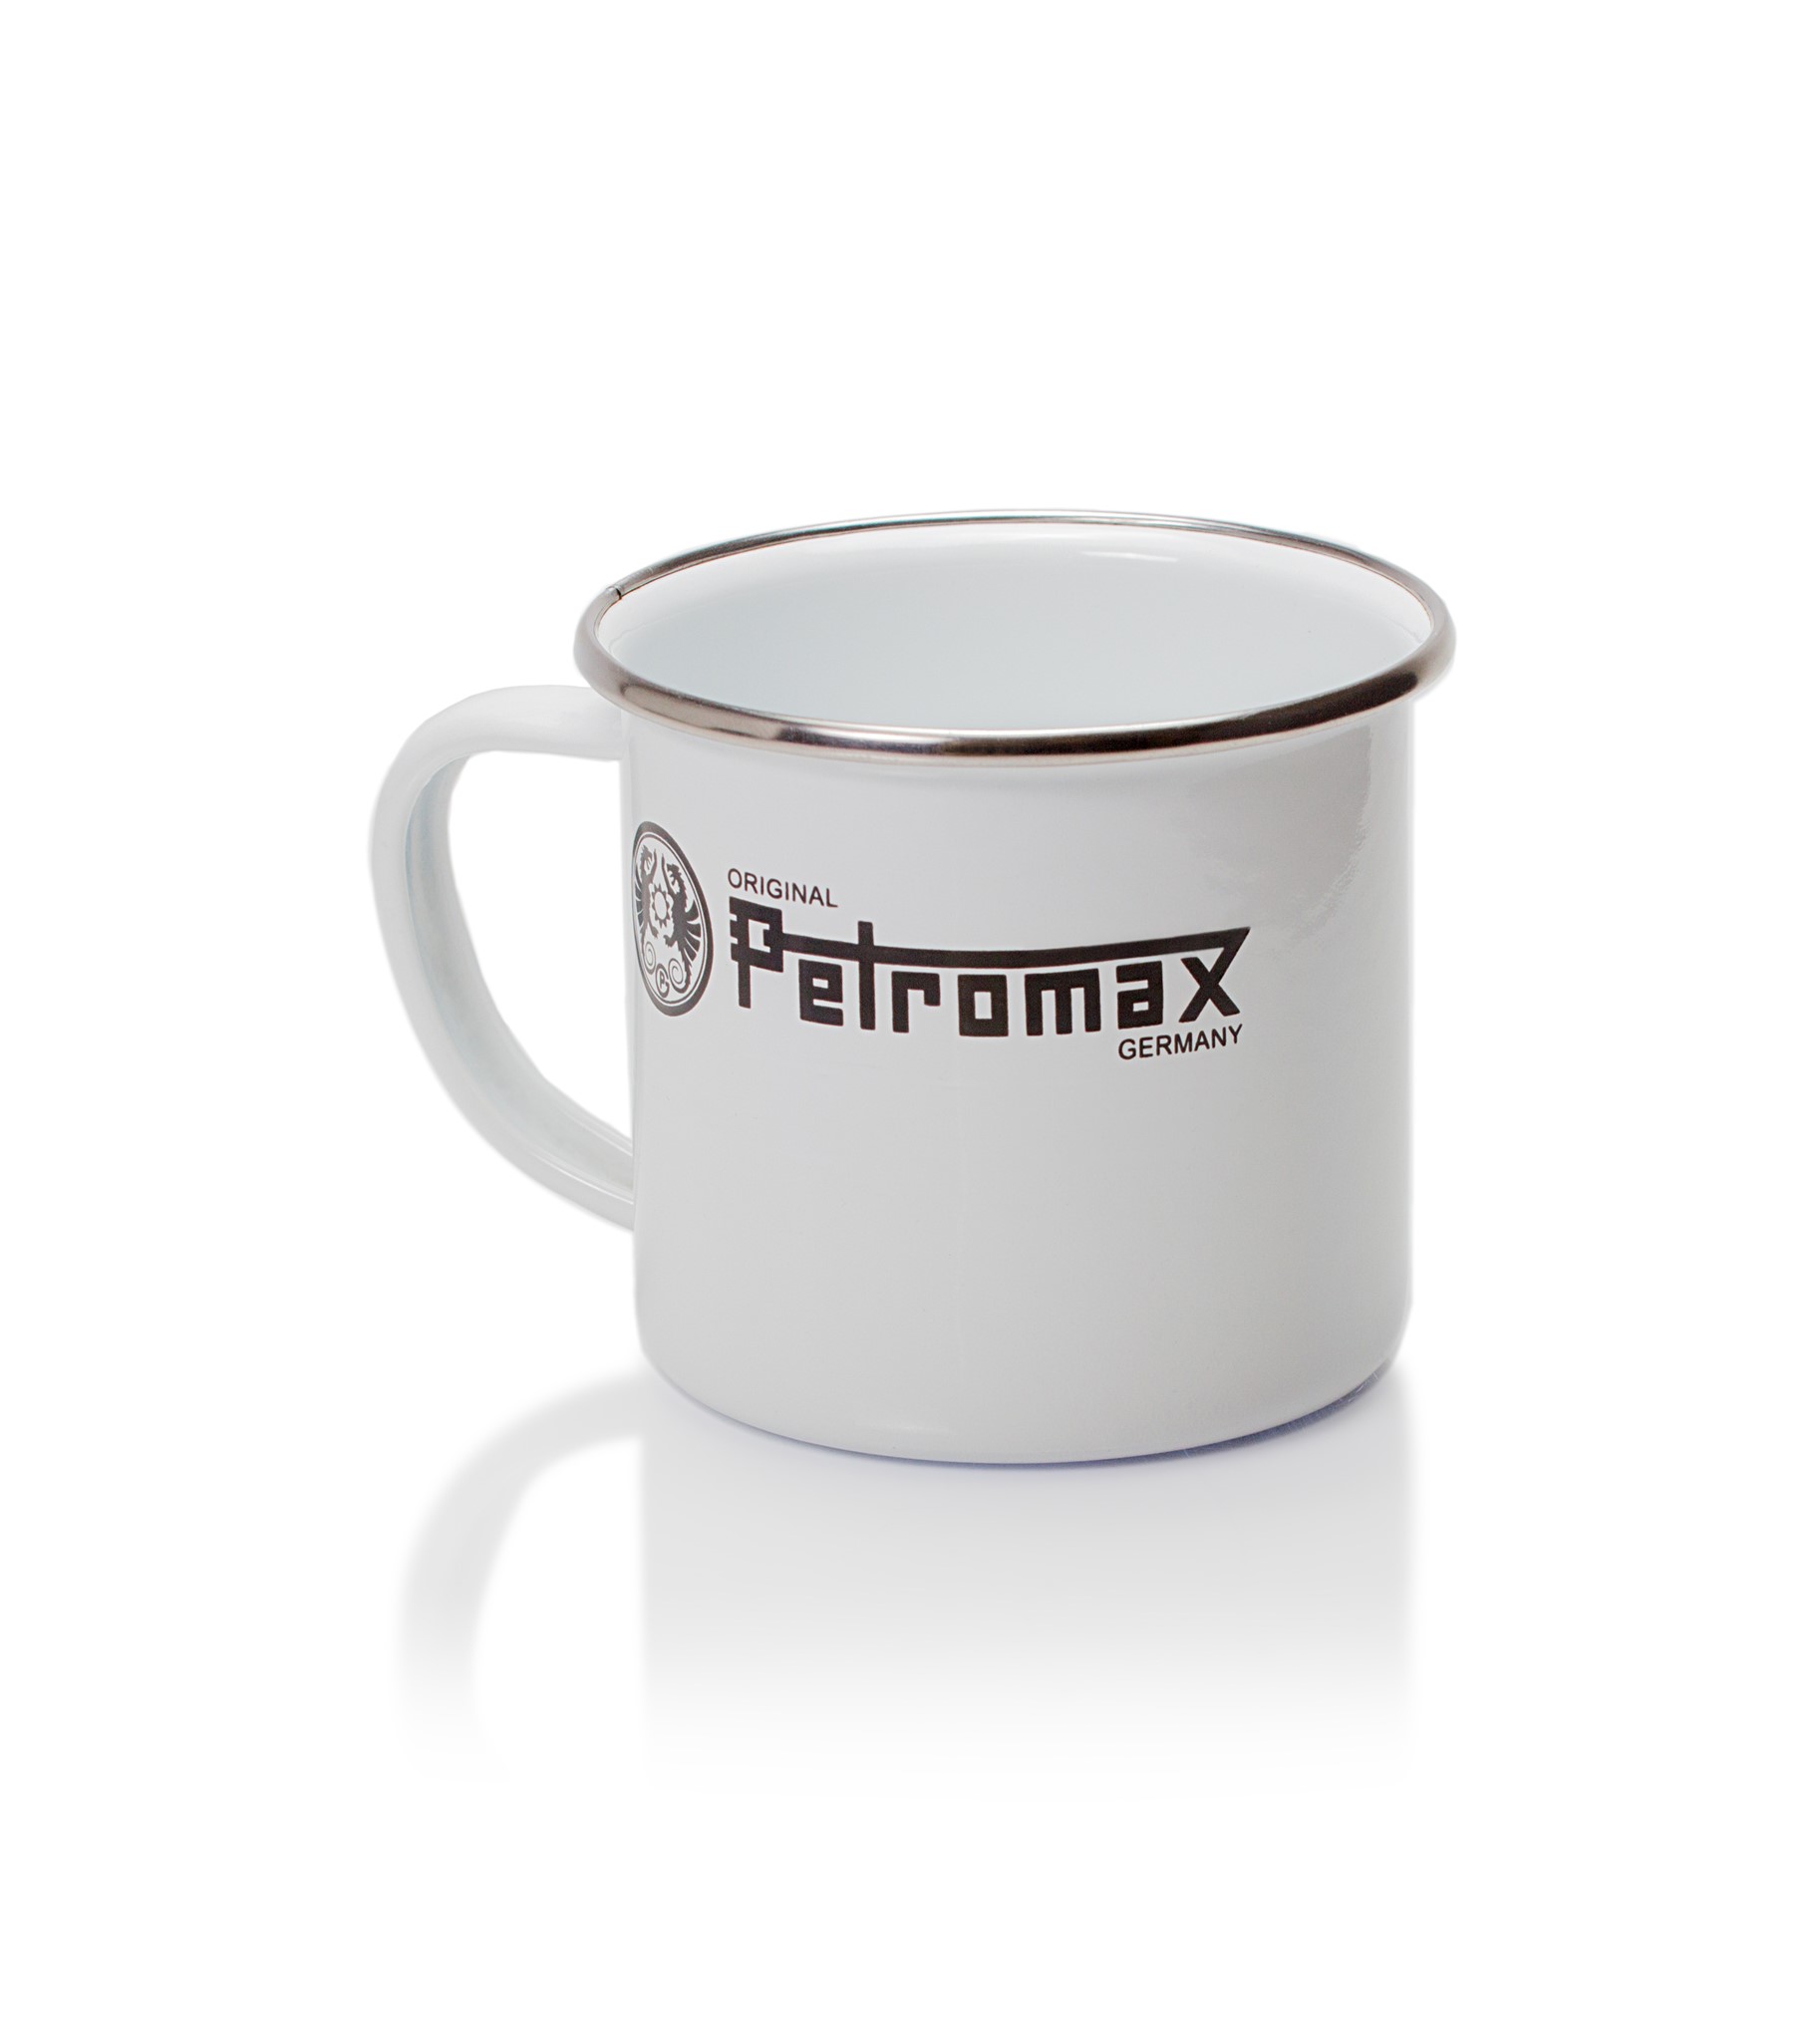 Immagine di Petromax - Tazza in smalto bianco